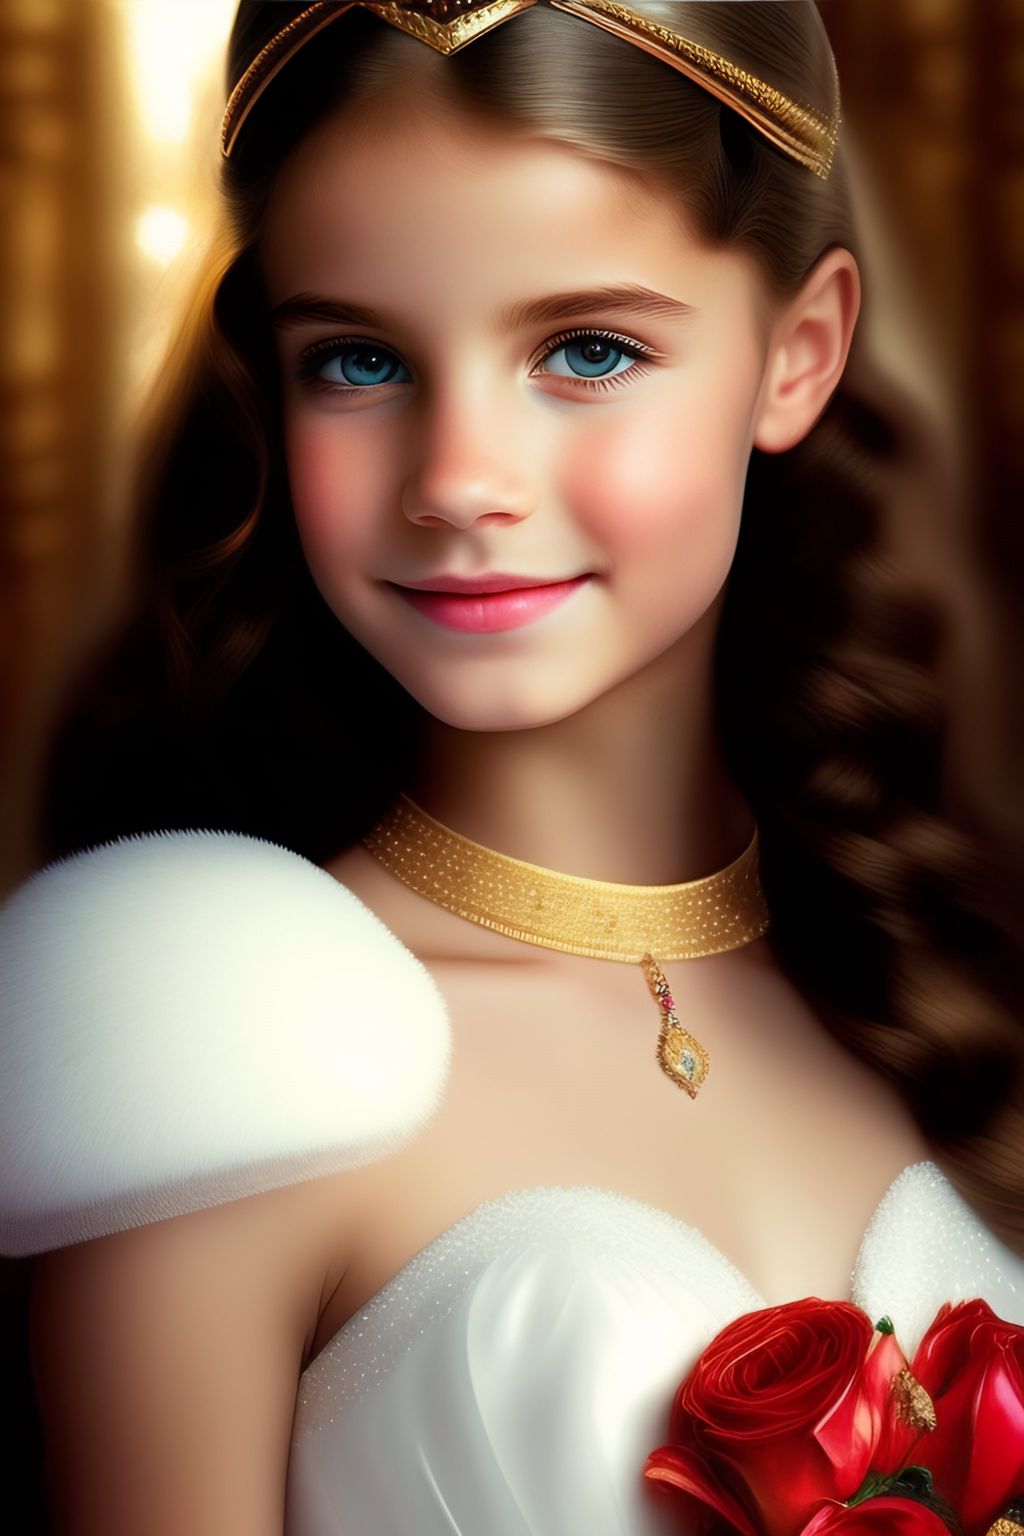 Маленькие принцессы с кудряшками, которые короткие и светлые, и украшены золотом.